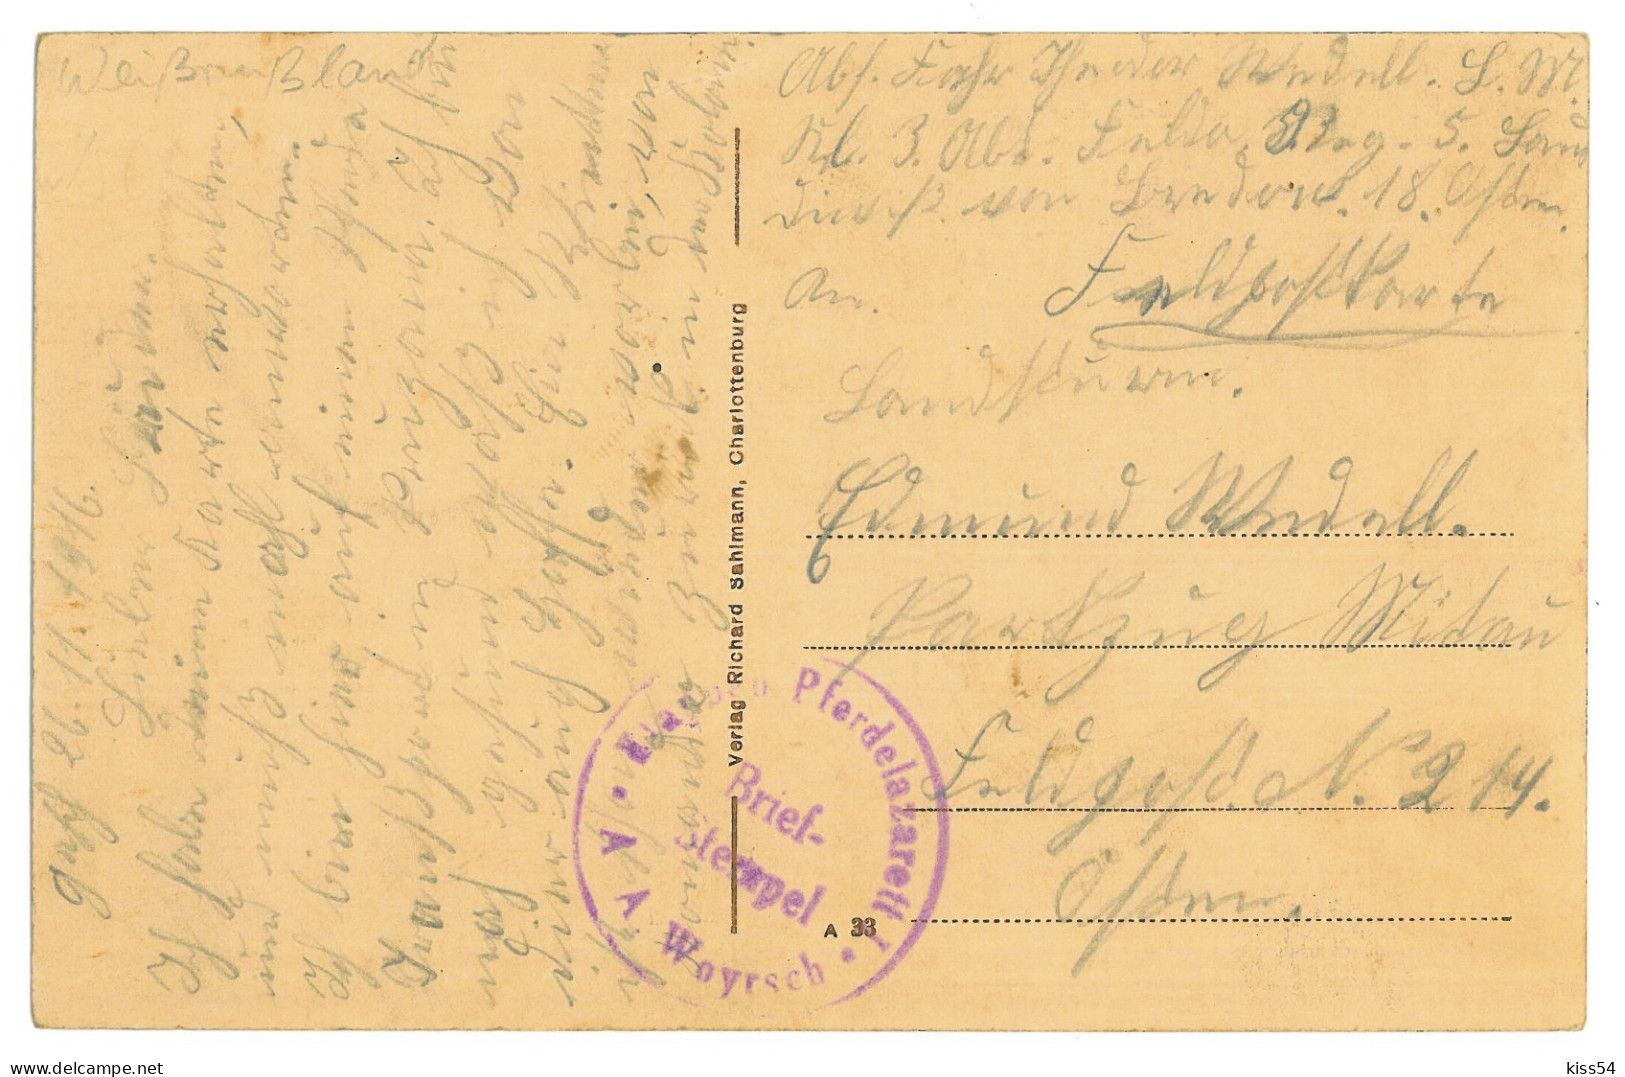 BL 31 - 24502 PRUZHANY, Brest Region, Street School, Belarus - Old Postcard, CENSOR - Used - 1916 - Weißrussland